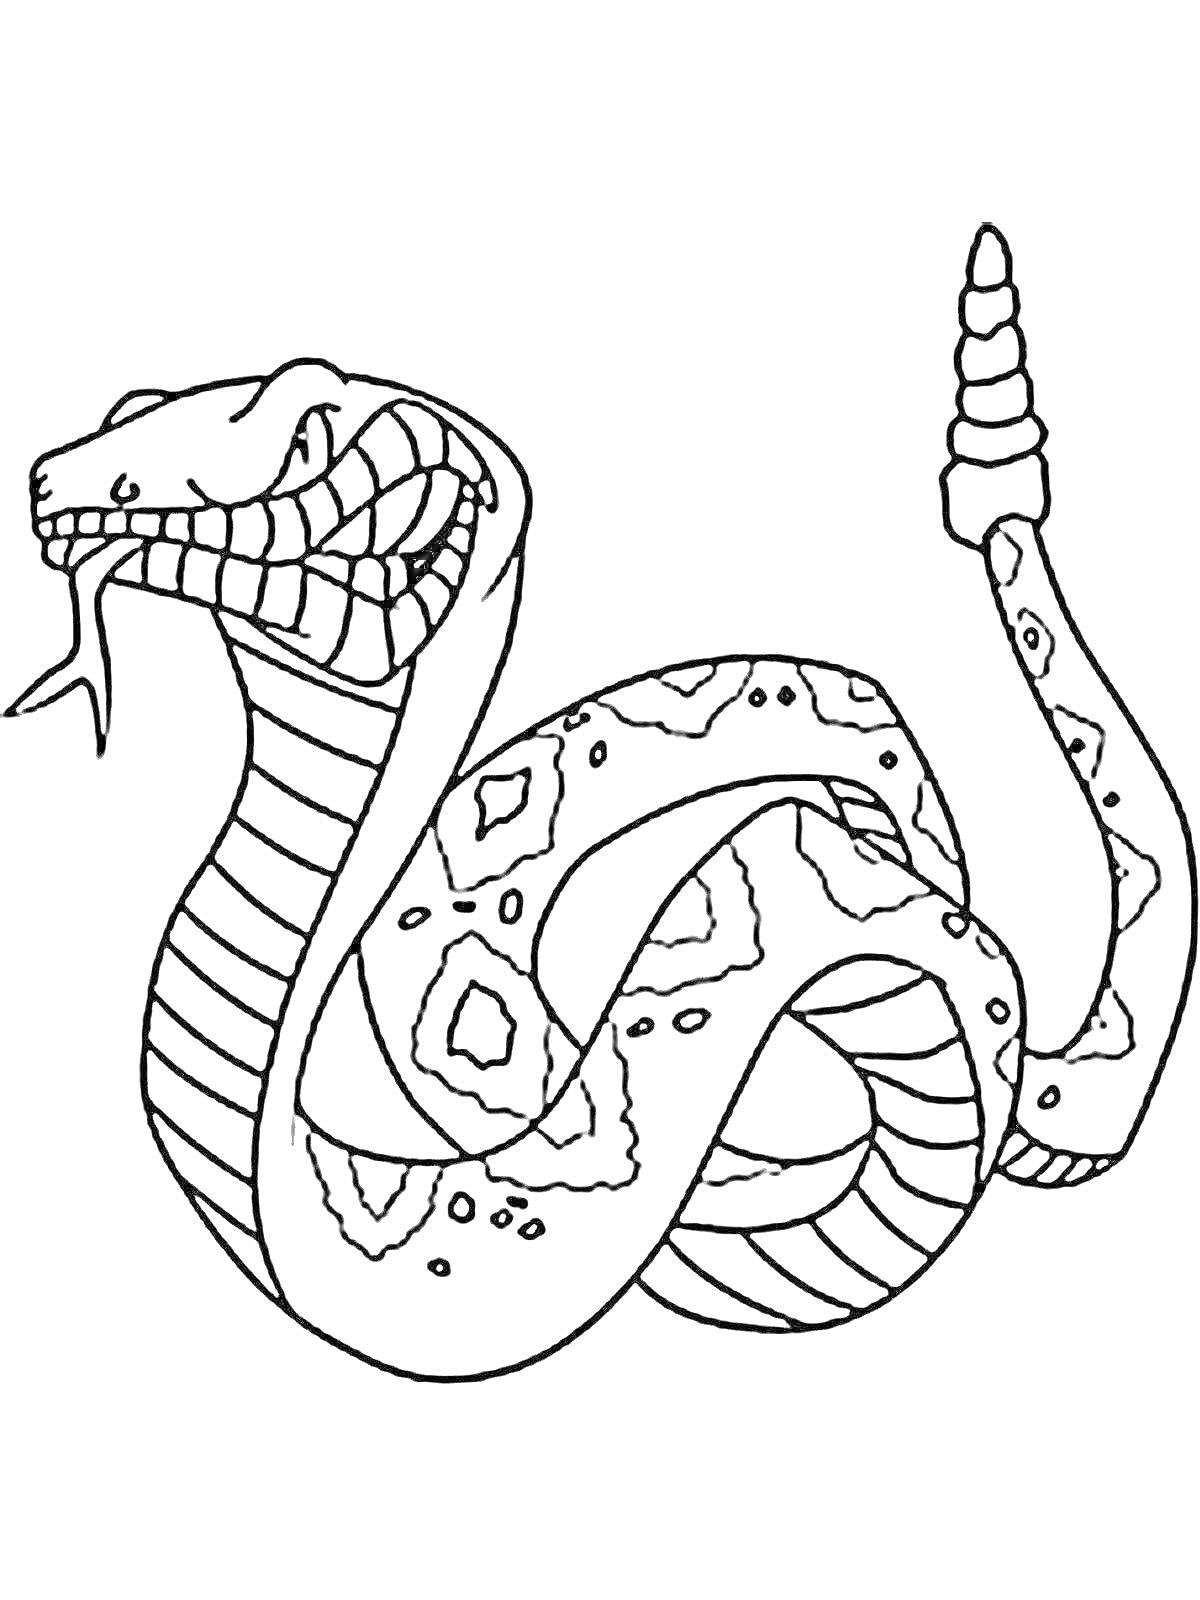 Раскраска Кобра с языком и капюшоном, узорчатое тело